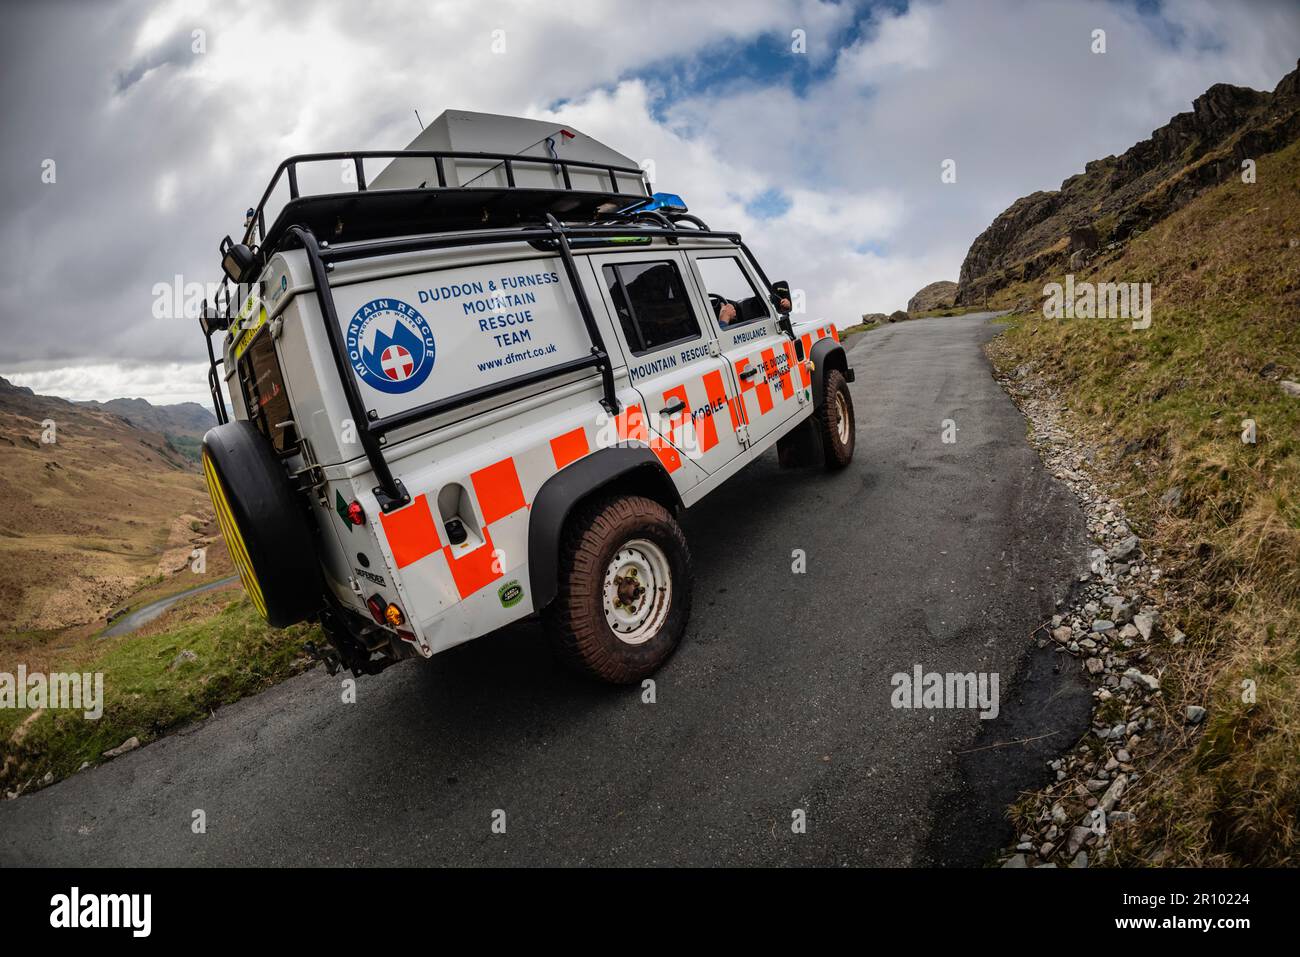 Duddon & Furness Mountain Rescue Team conduite sur le col HardKnott, la route la plus raide d'Angleterre, Eskdale, Lake District, Royaume-Uni. Banque D'Images